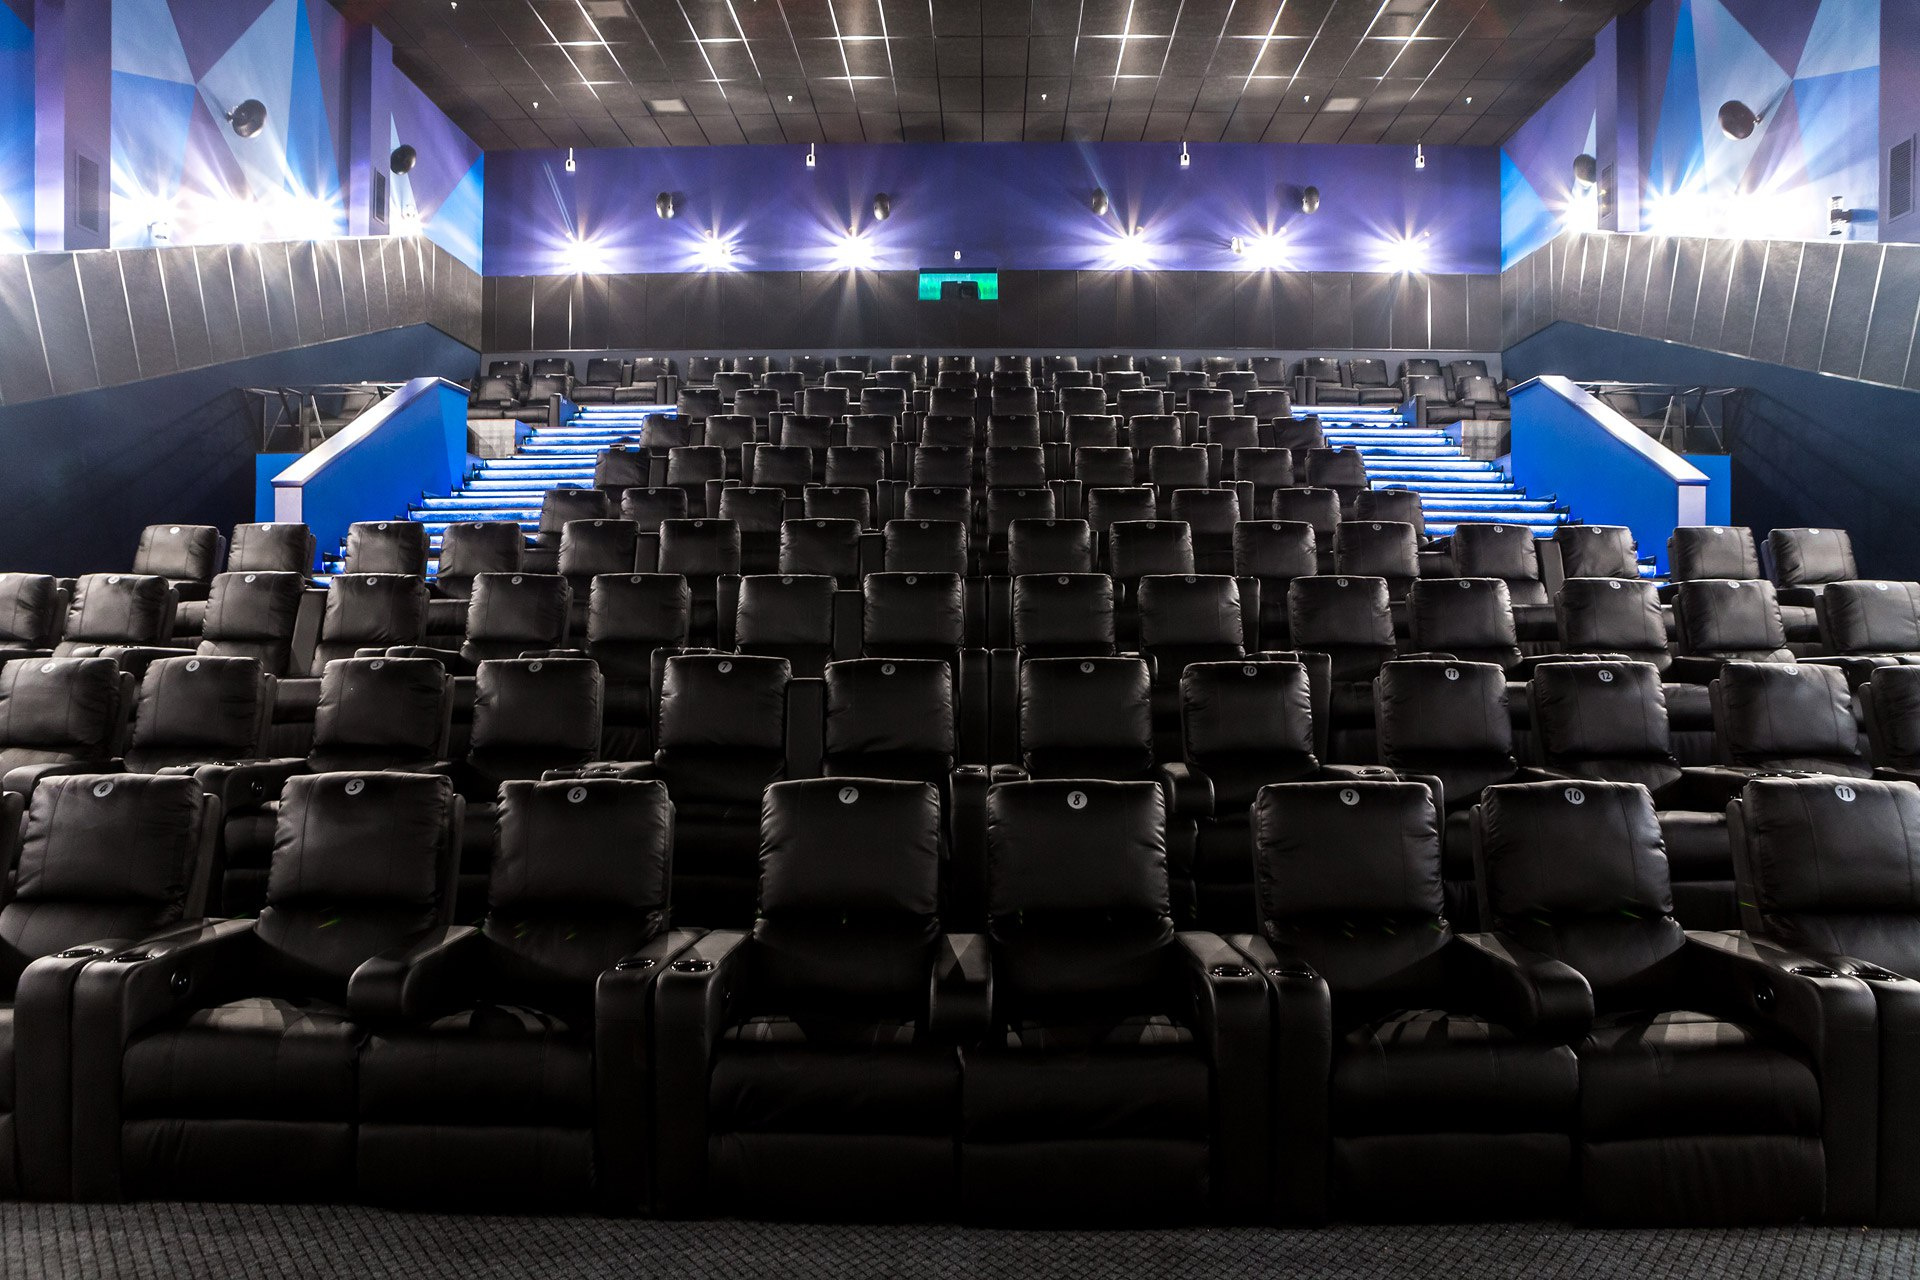 Просмотр фильмов в новом кинотеатре будет комфортным благодаря мягким креслам-диванам и большому пространству между рядами